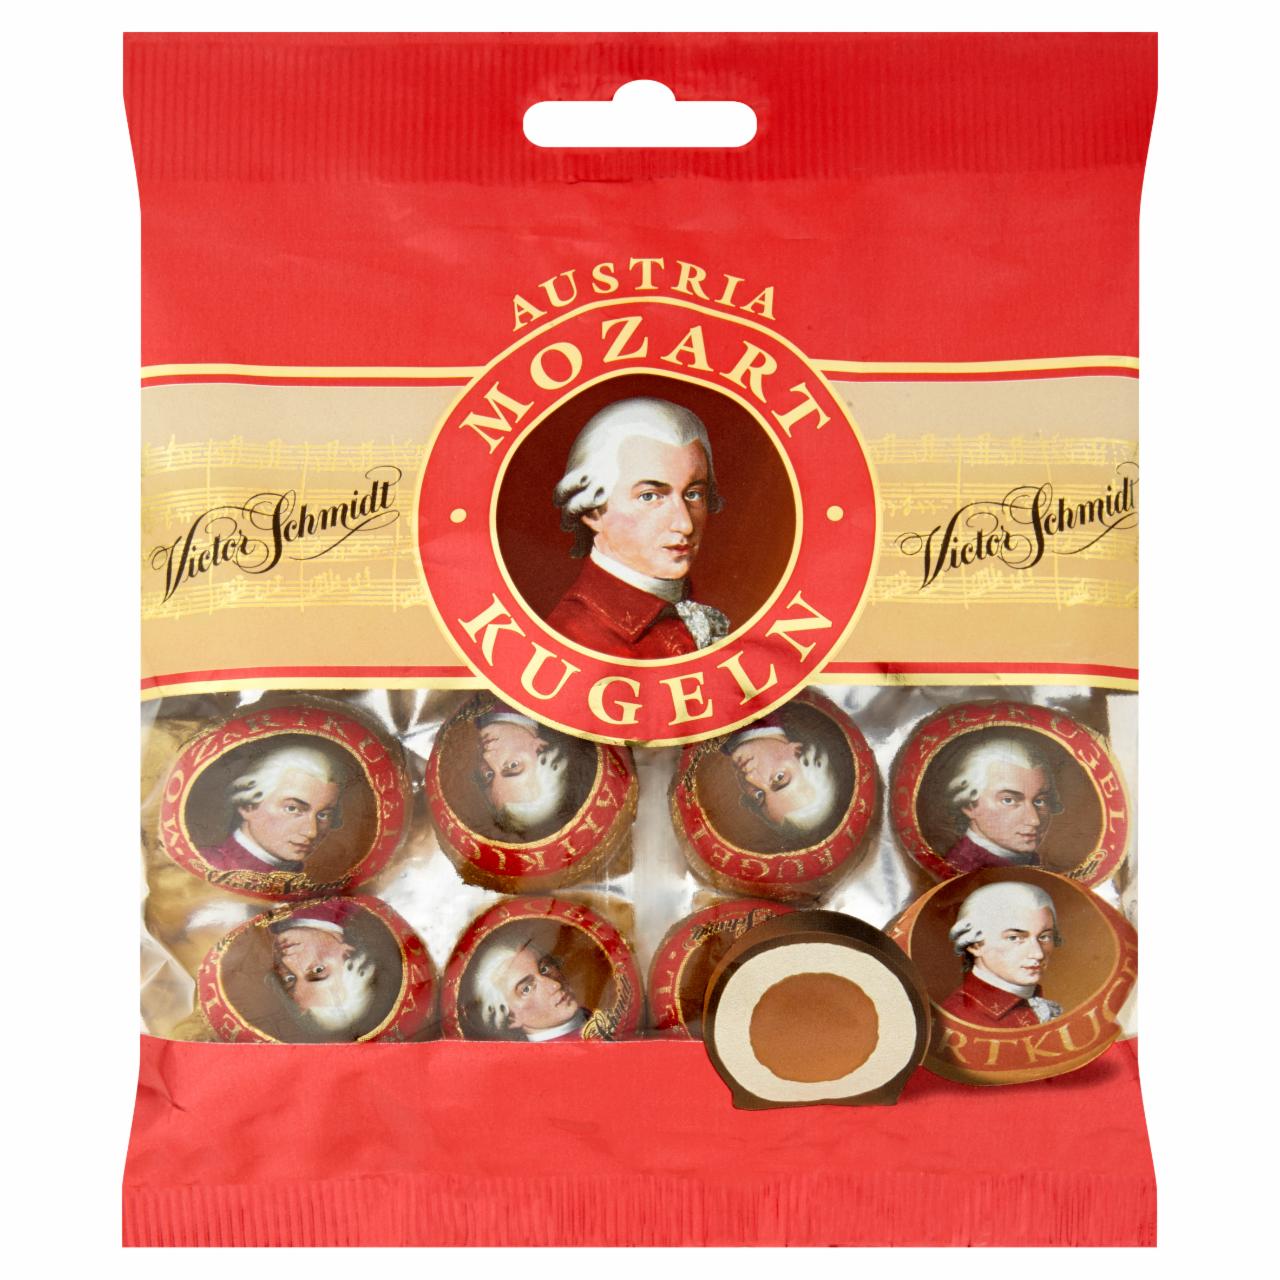 Képek - Victor Schmidt Mozartkugeln marcipánnal és nugátkrémmel töltött csokoládé praliné 148 g